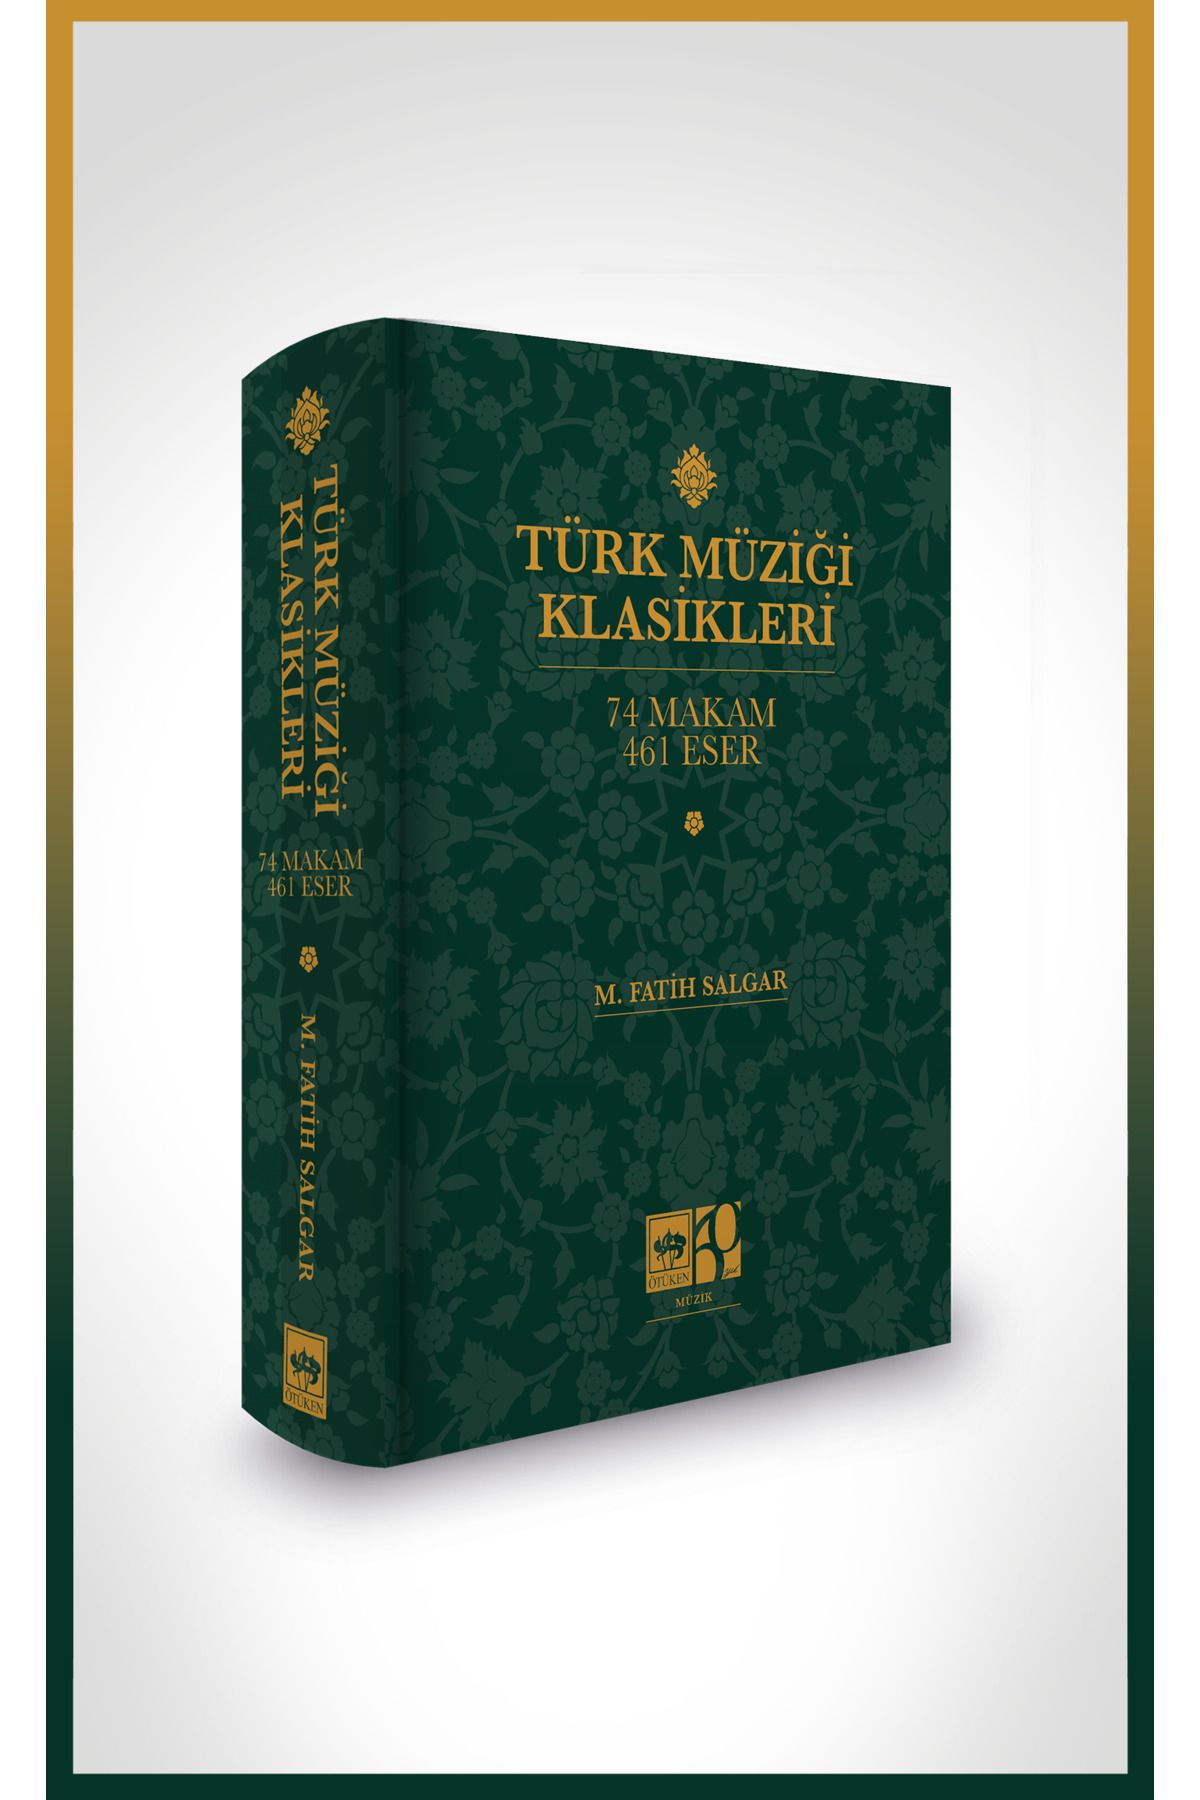 Ötüken Neşriyat Türk Müziği Klasikleri 74 Makam 461 Eser / M. Fatih Salgar